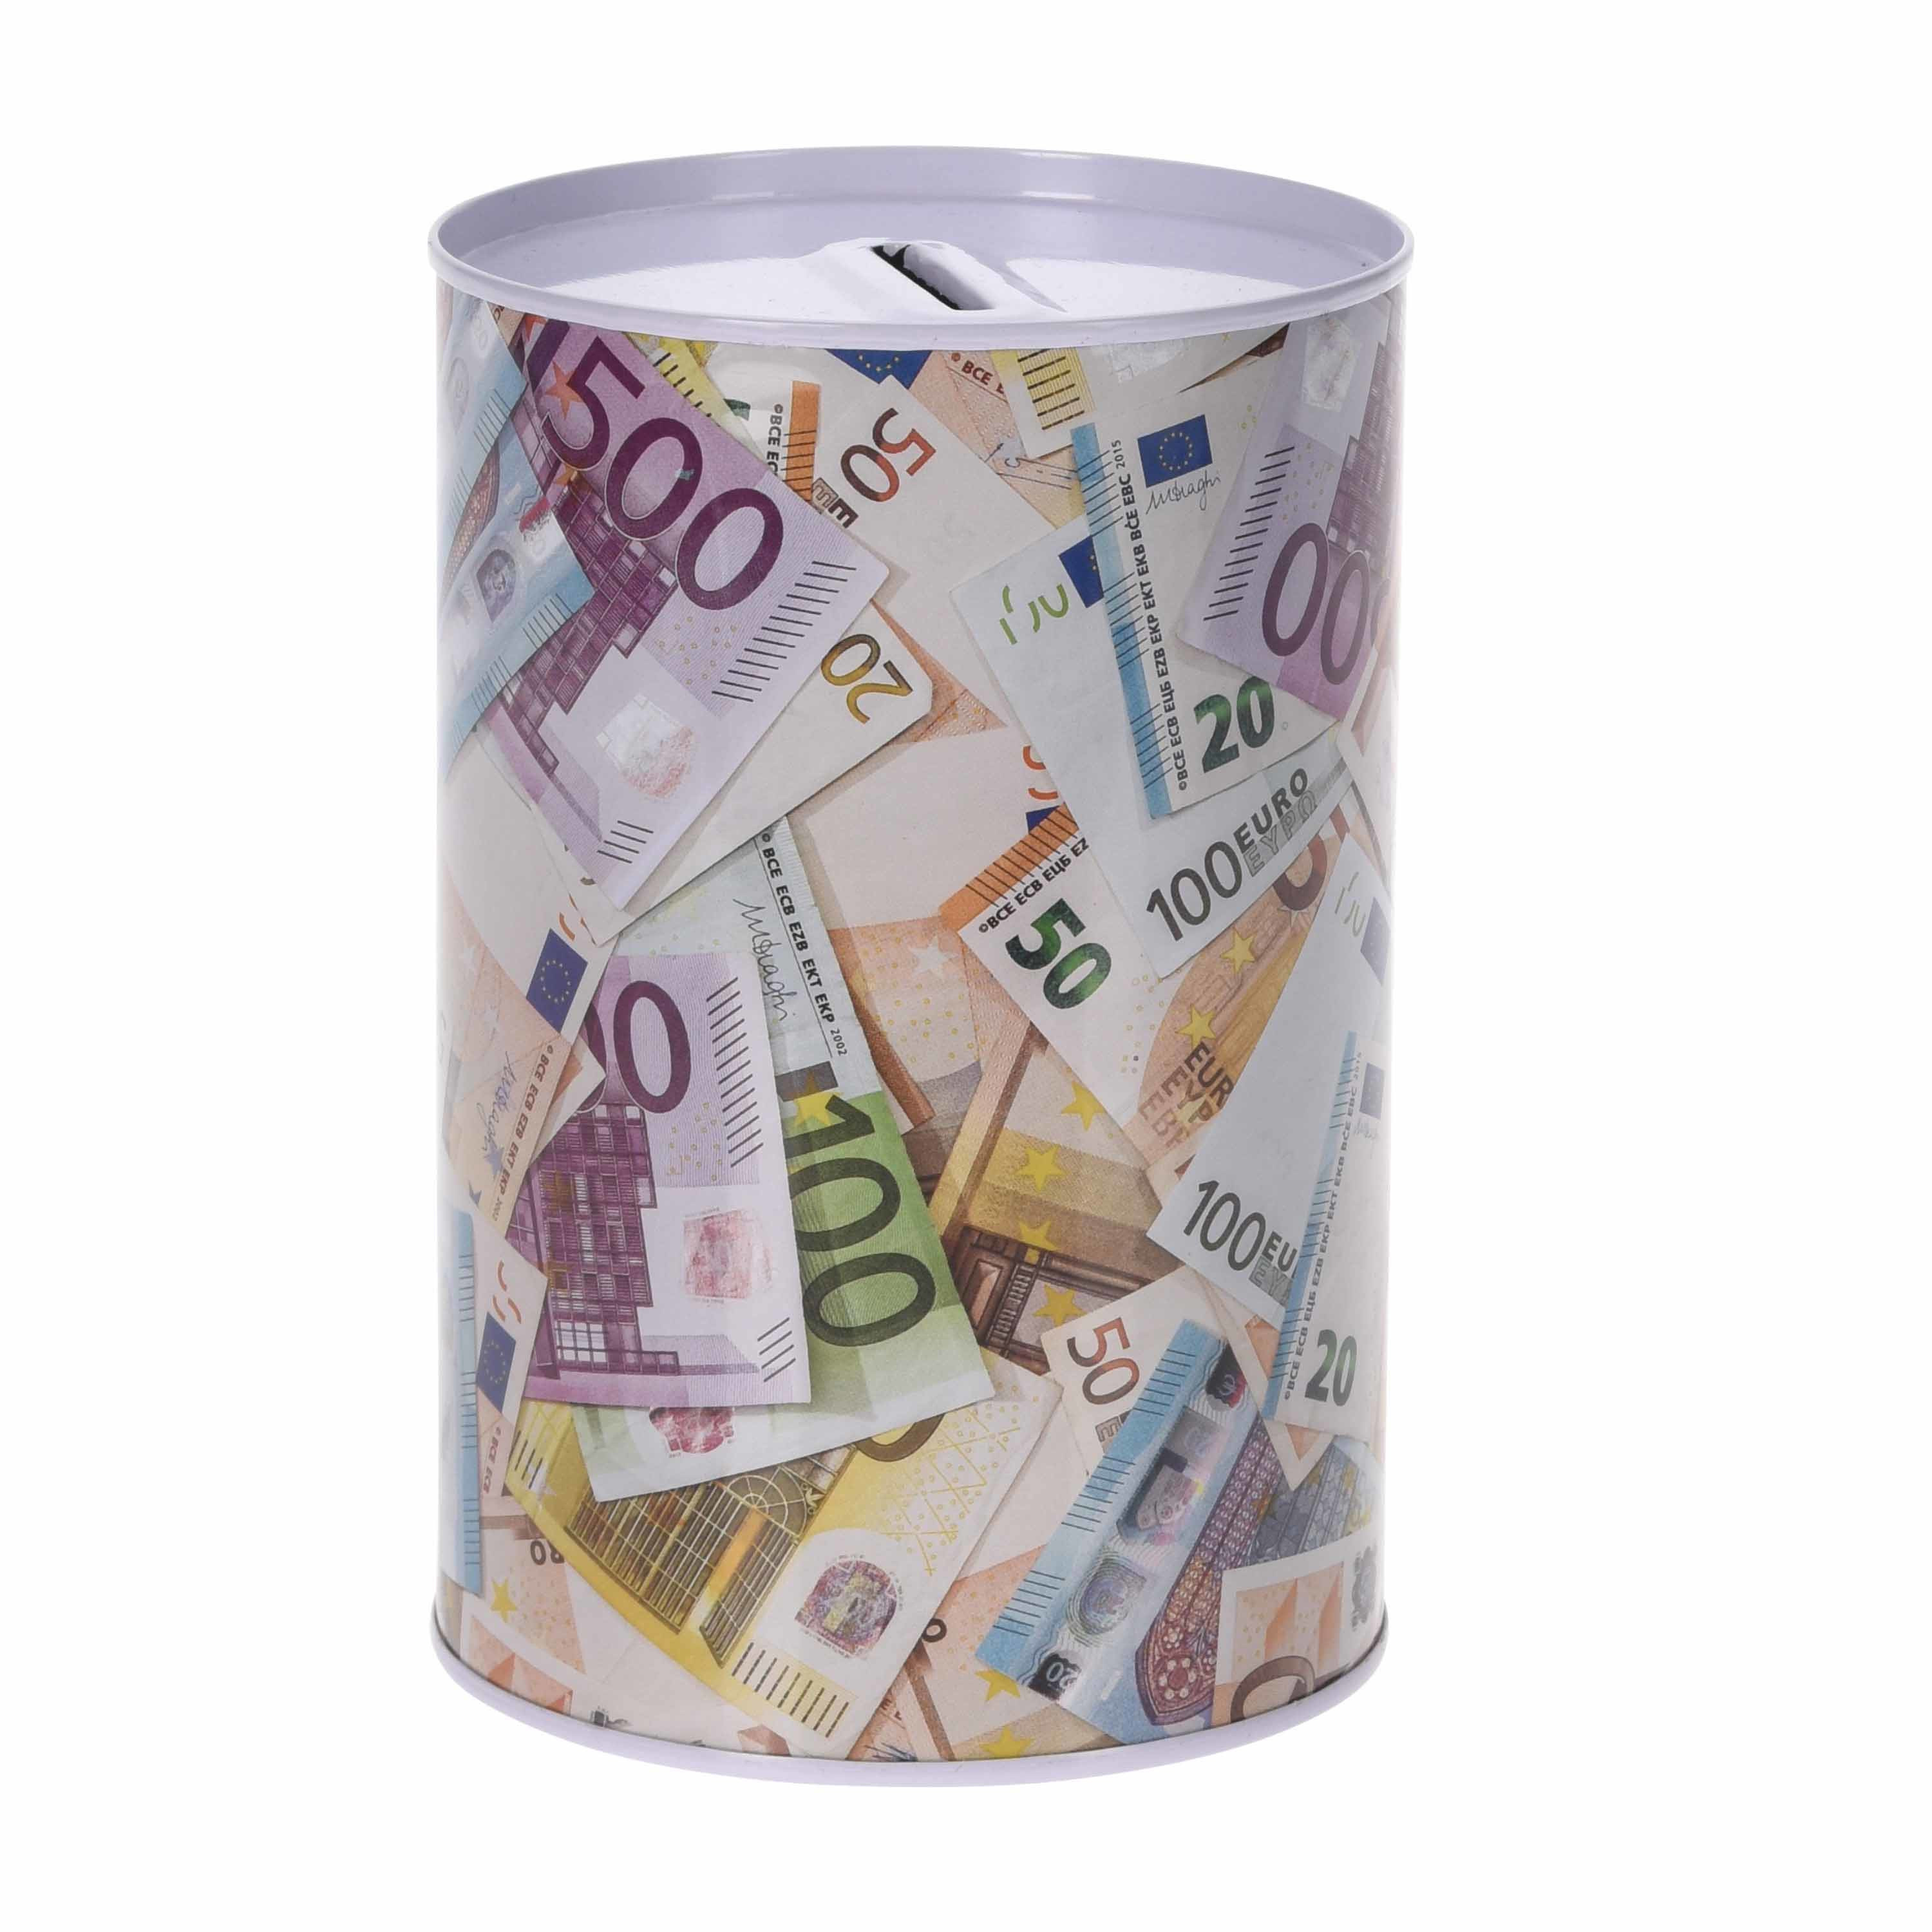 Spaarpot euro biljetten stapel 10 x 15 cm - Blikken/metalen spaarpotten met euro biljetten